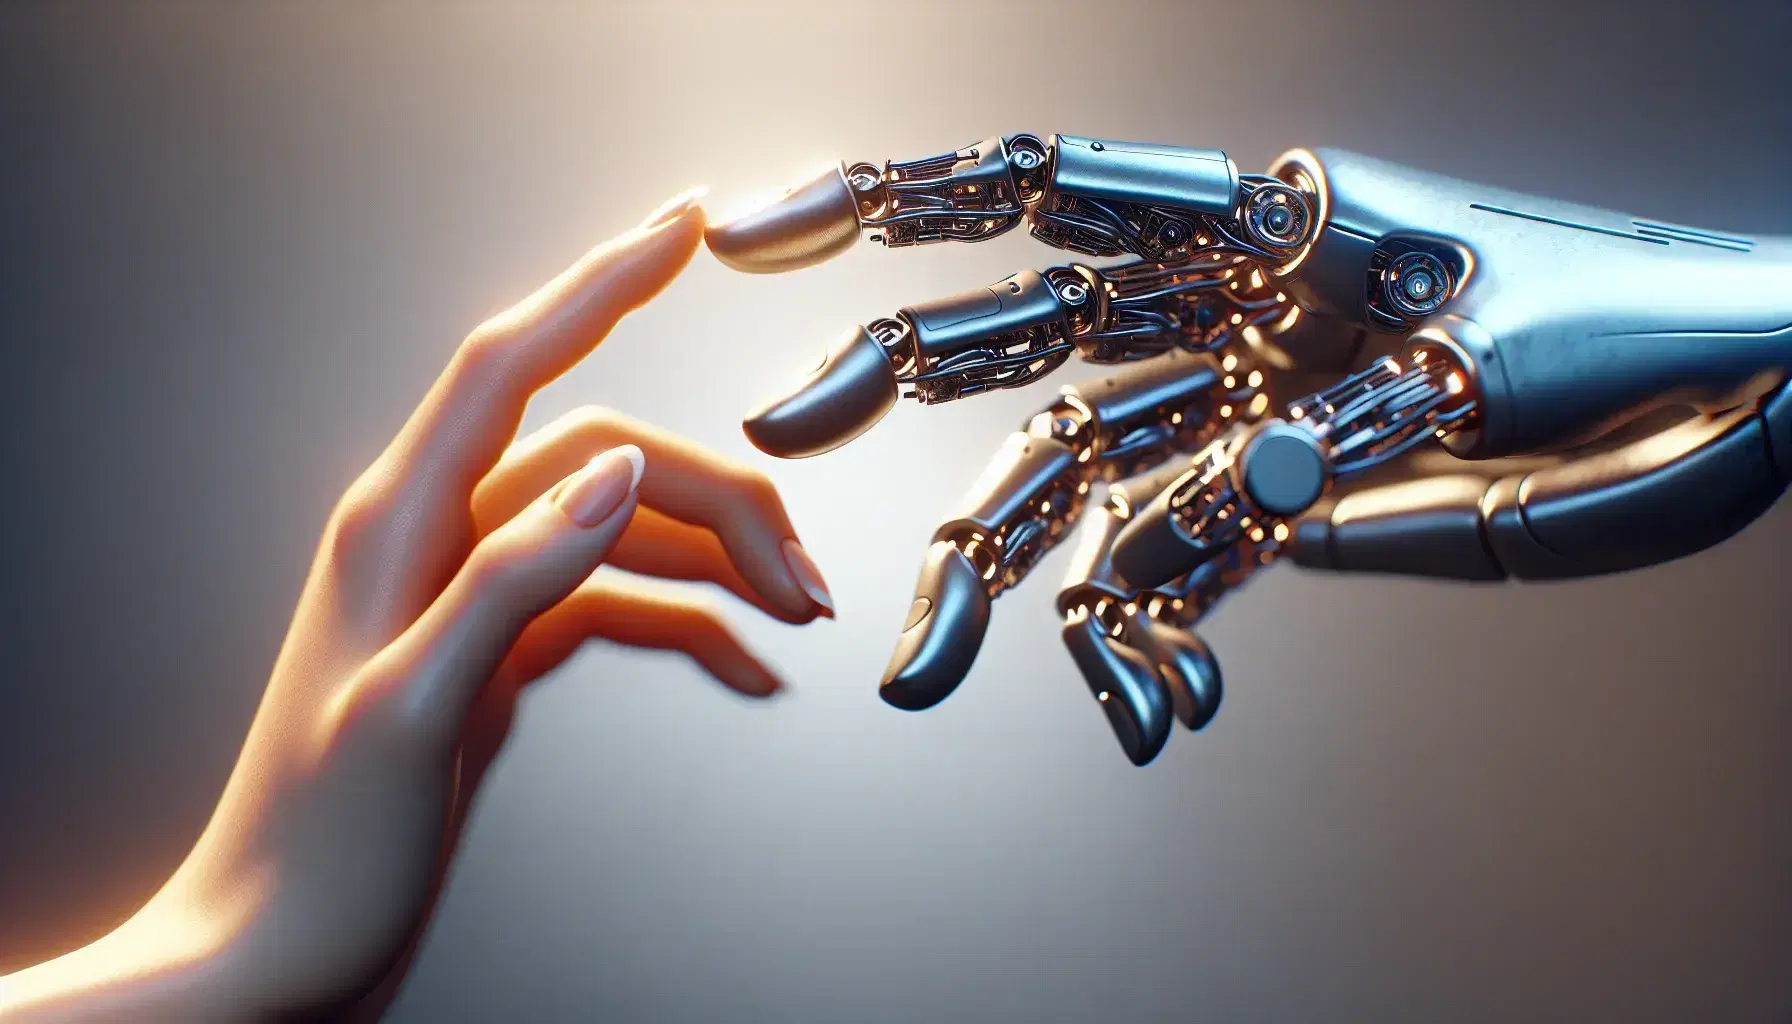 Encuentro entre mano humana y robótica a punto de tocarse, destacando la tecnología y la conexión entre humanos y máquinas.